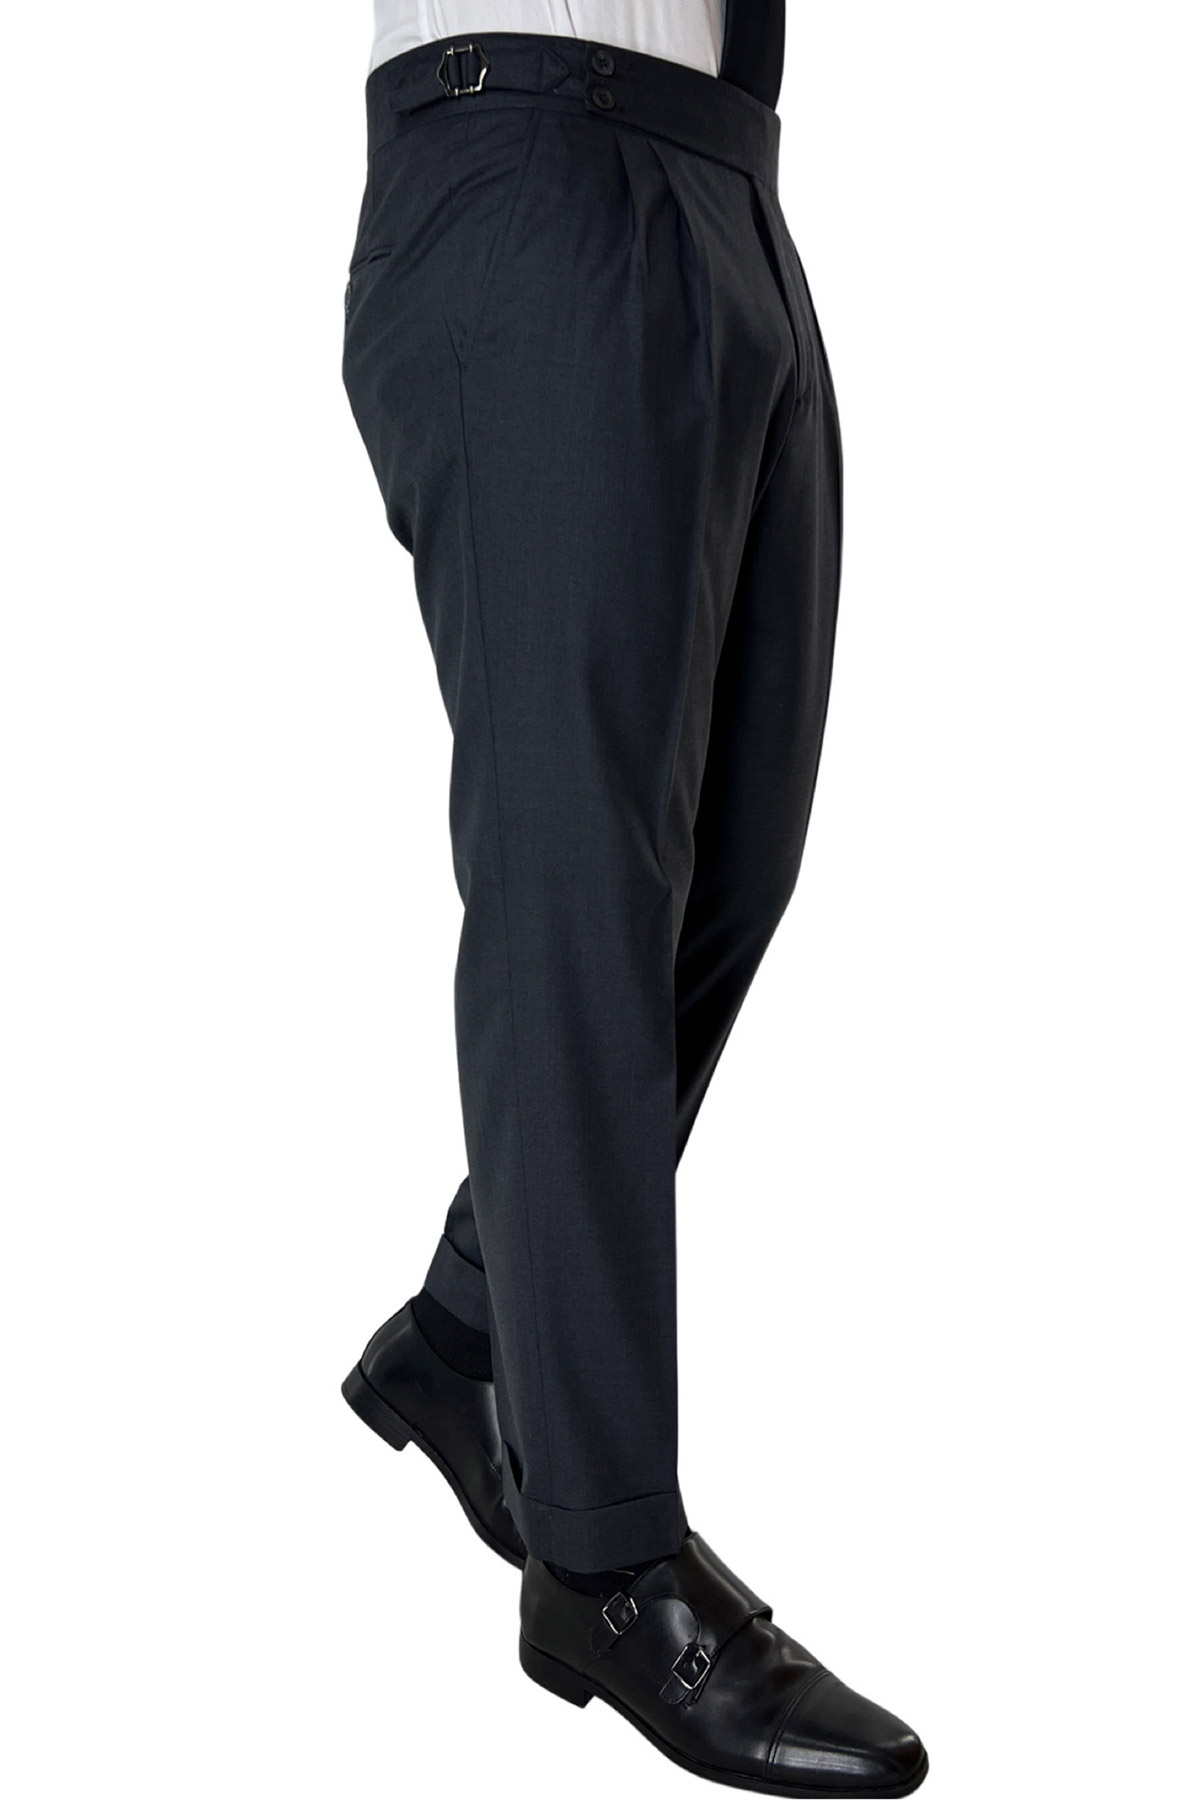 Pantalone uomo grigio scuro vita alta doppia pinces in fresco lana super 140's Holland & Sherry